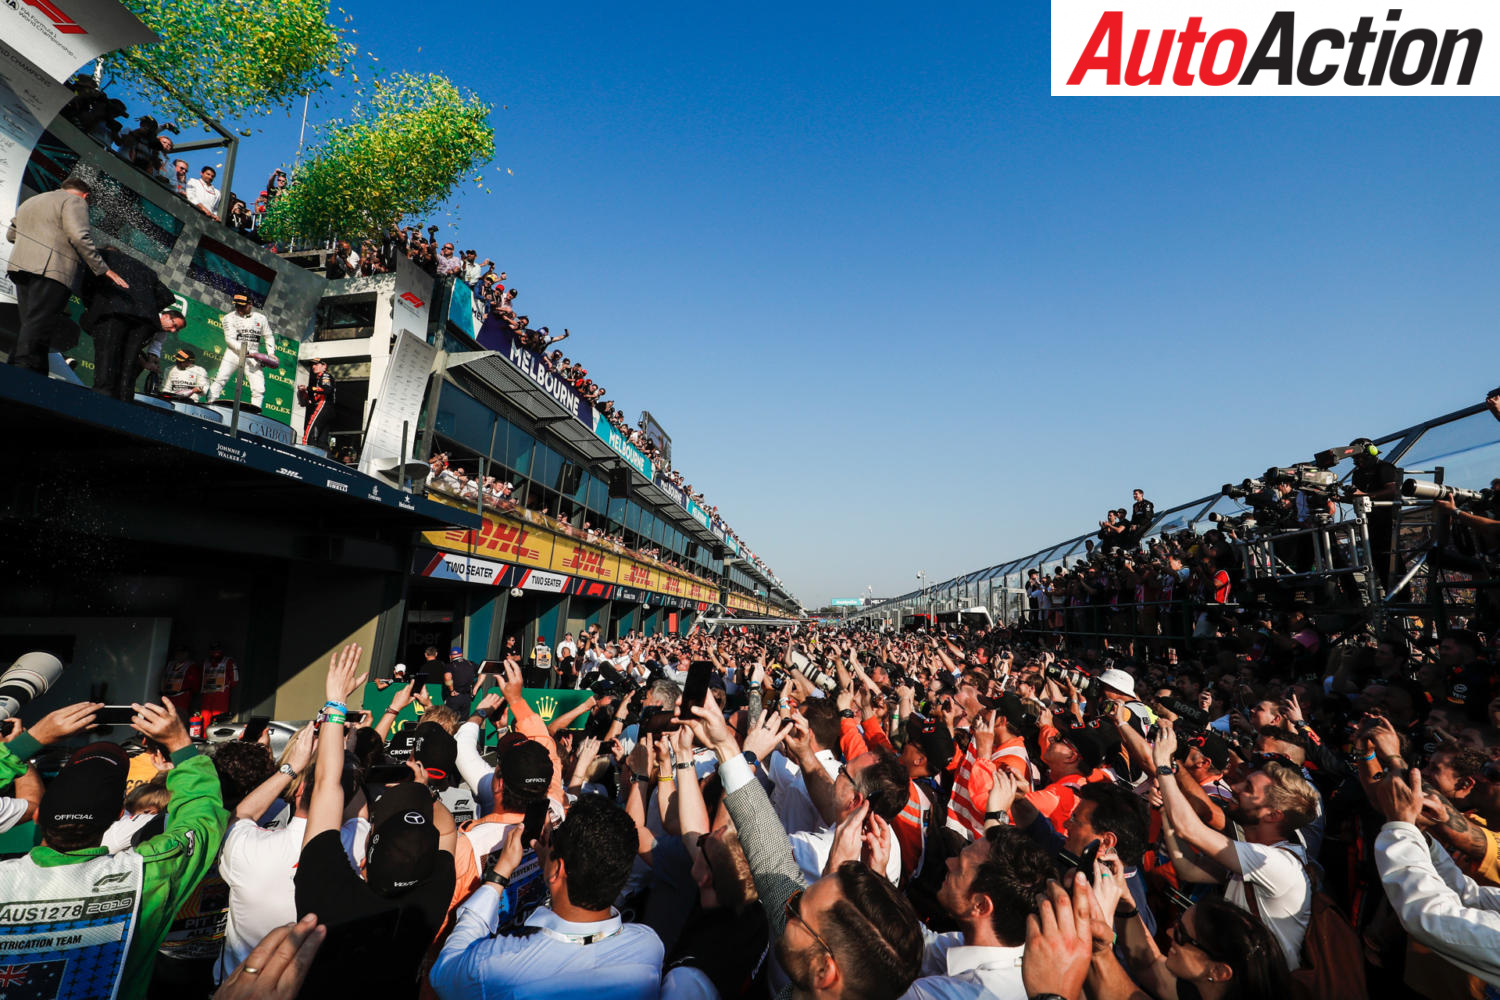 April date confirmed for Australian Grand Prix - Image: Motorsport Images